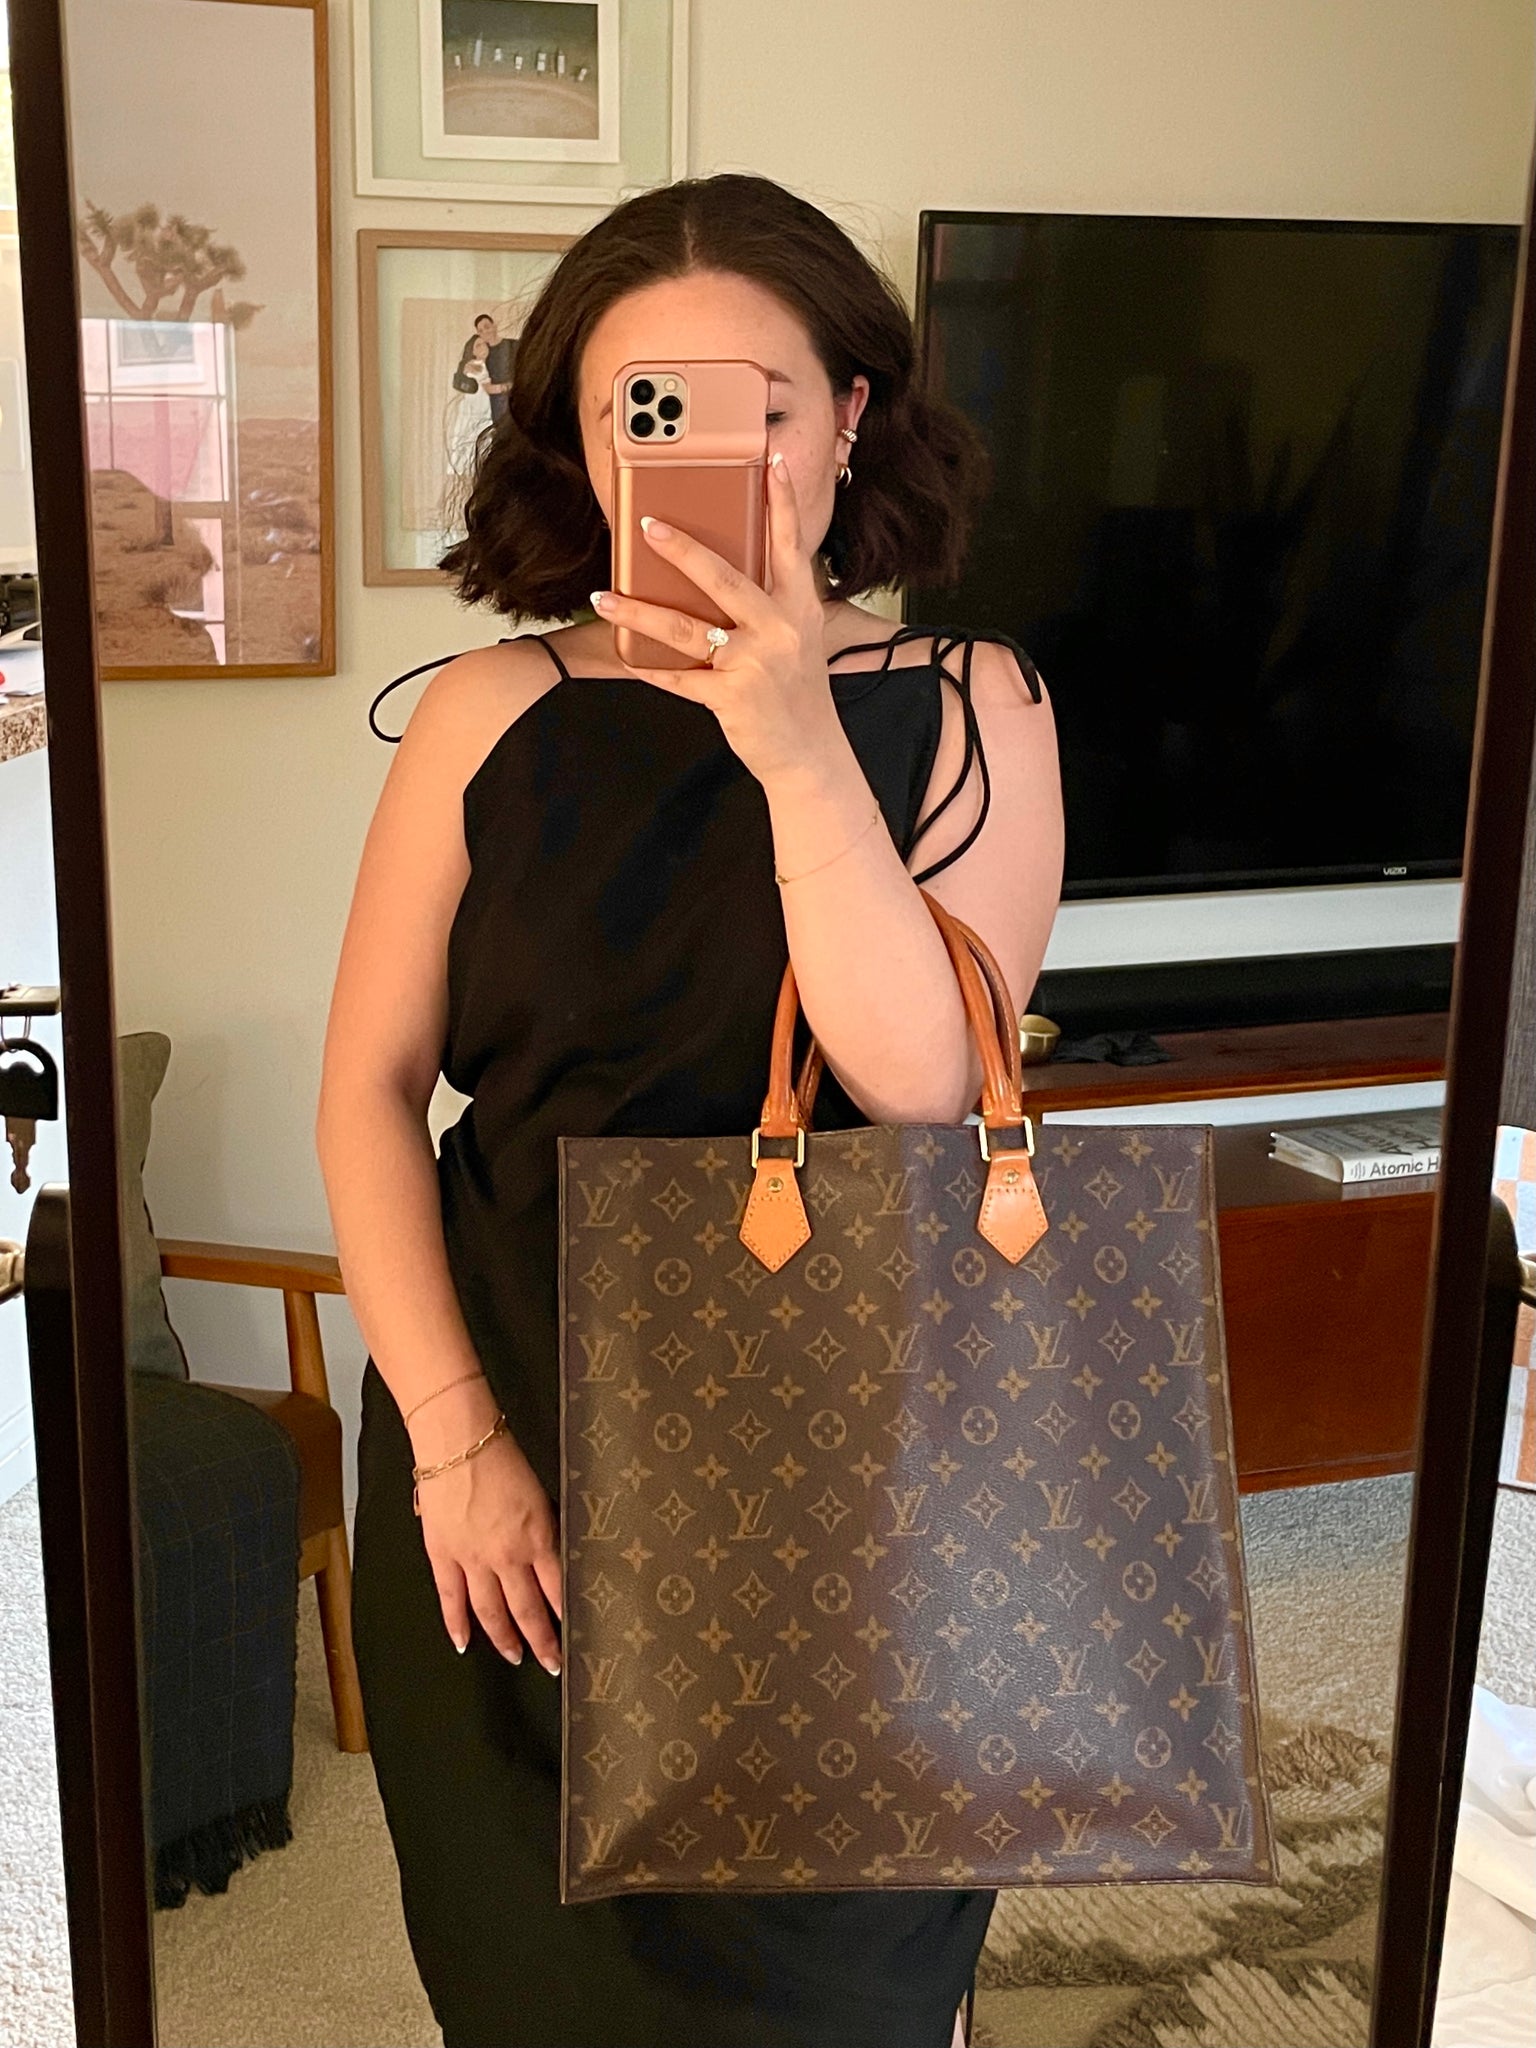 Louis Vuitton Sac Plat Shopping Bag